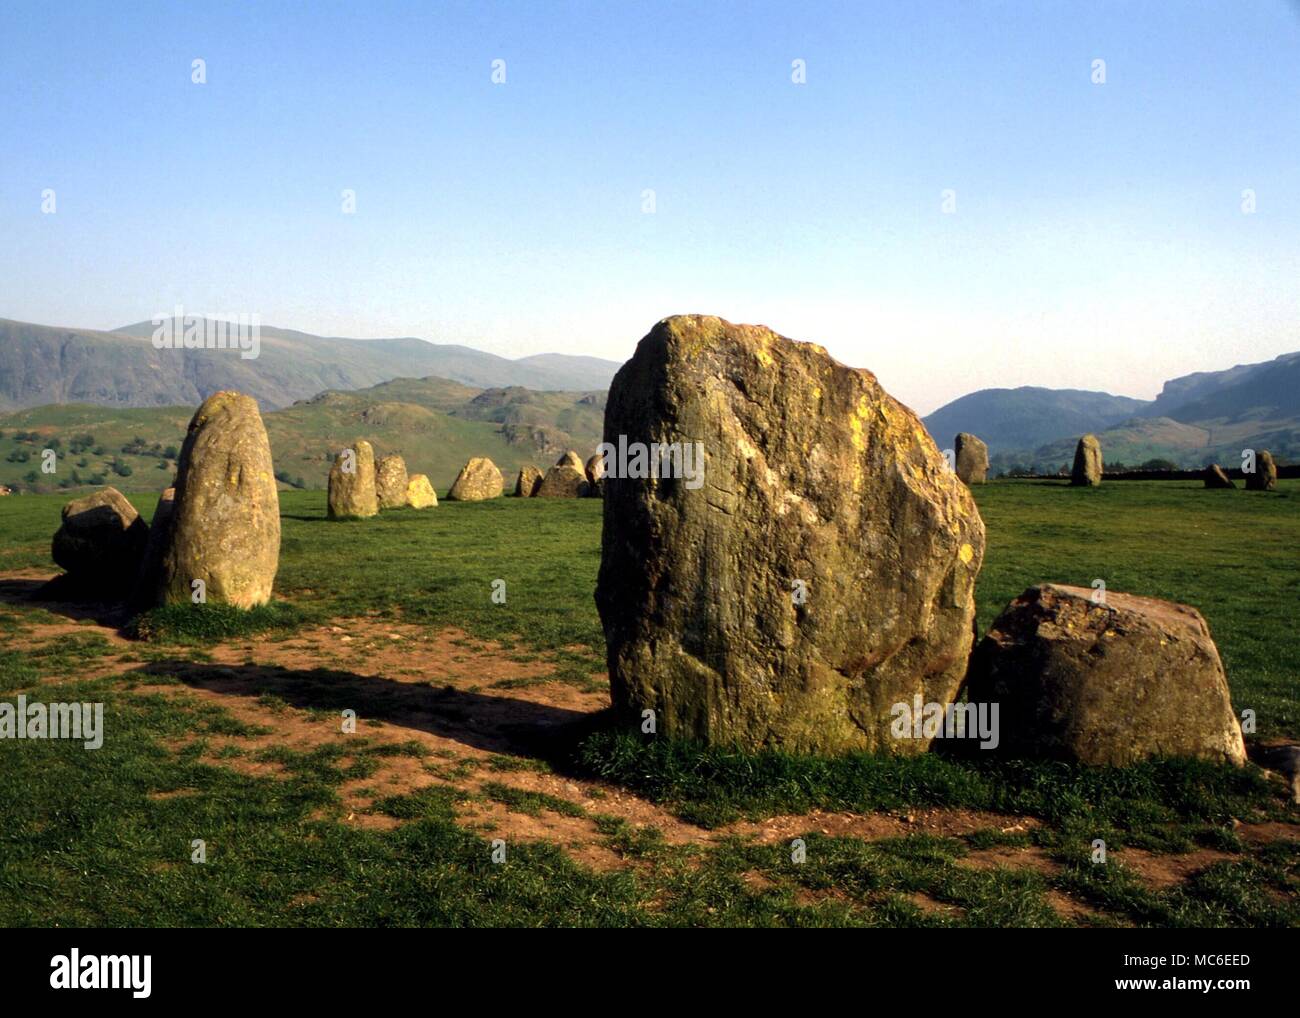 Les cercles de pierres de Castlerigg - l 'Carles' de cercle de Castlerigg dans près de Keswick Cumbria, se compose de 38 pierres dressées situé dans un diamètre maximum de 107 pieds, avec un cercle de pierre dans l'anneau extérieur. Probablement l'c. 2 500 av. Banque D'Images